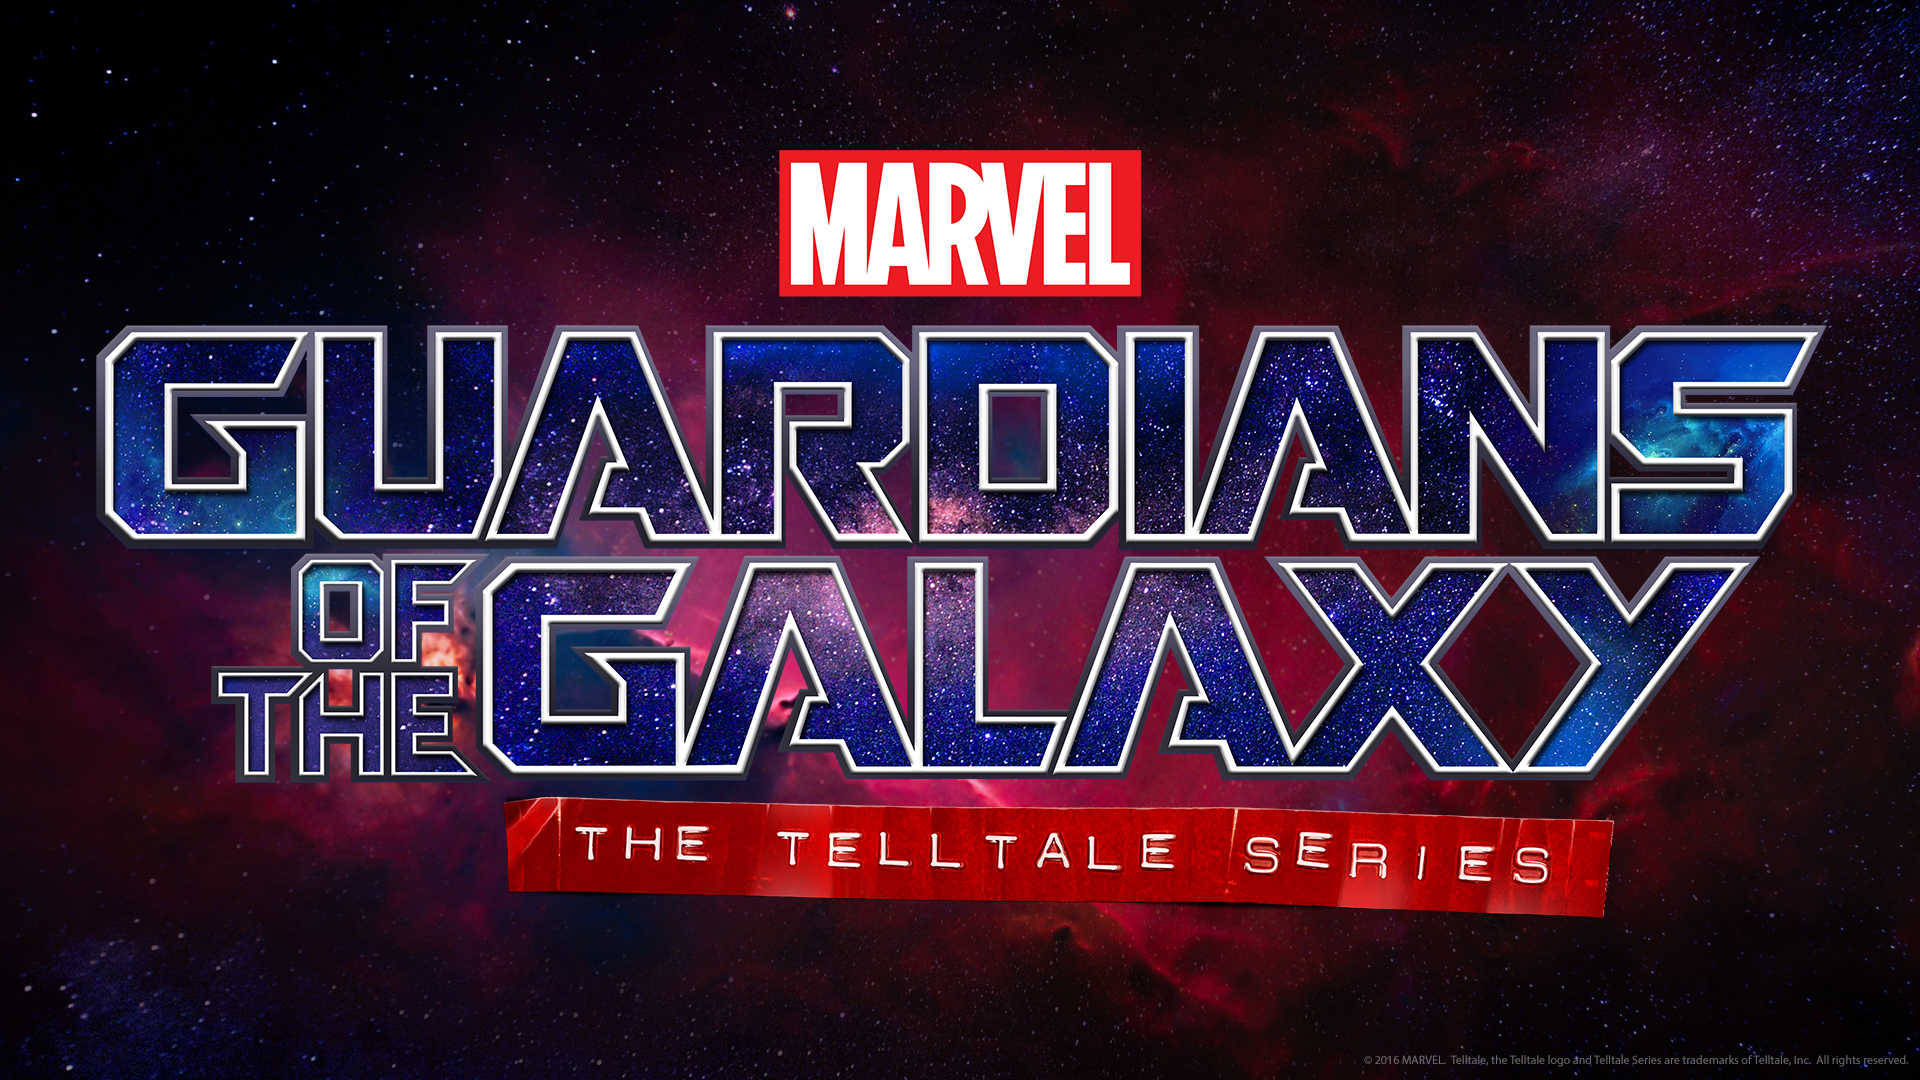 Marvel’s Guardians Galaxy: Telltale Series Premières images